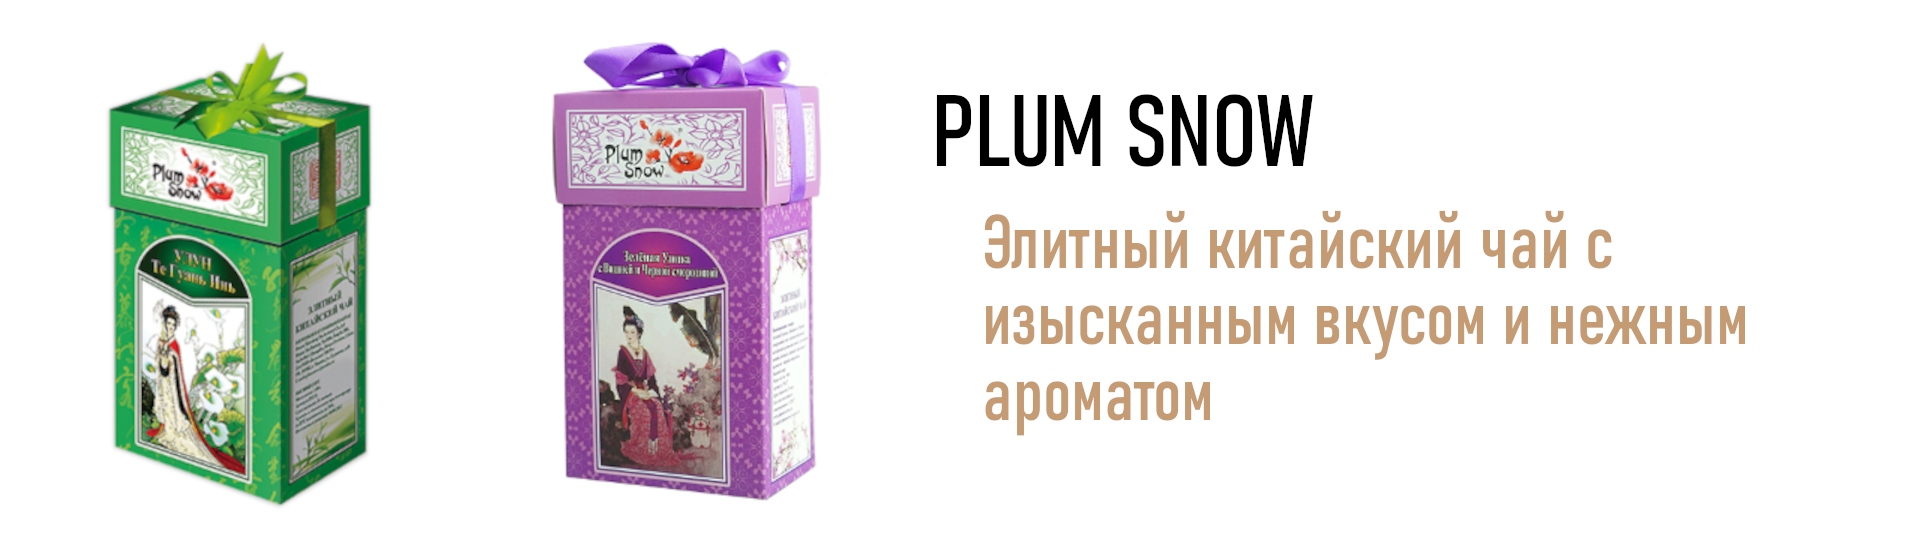 Plum Snow